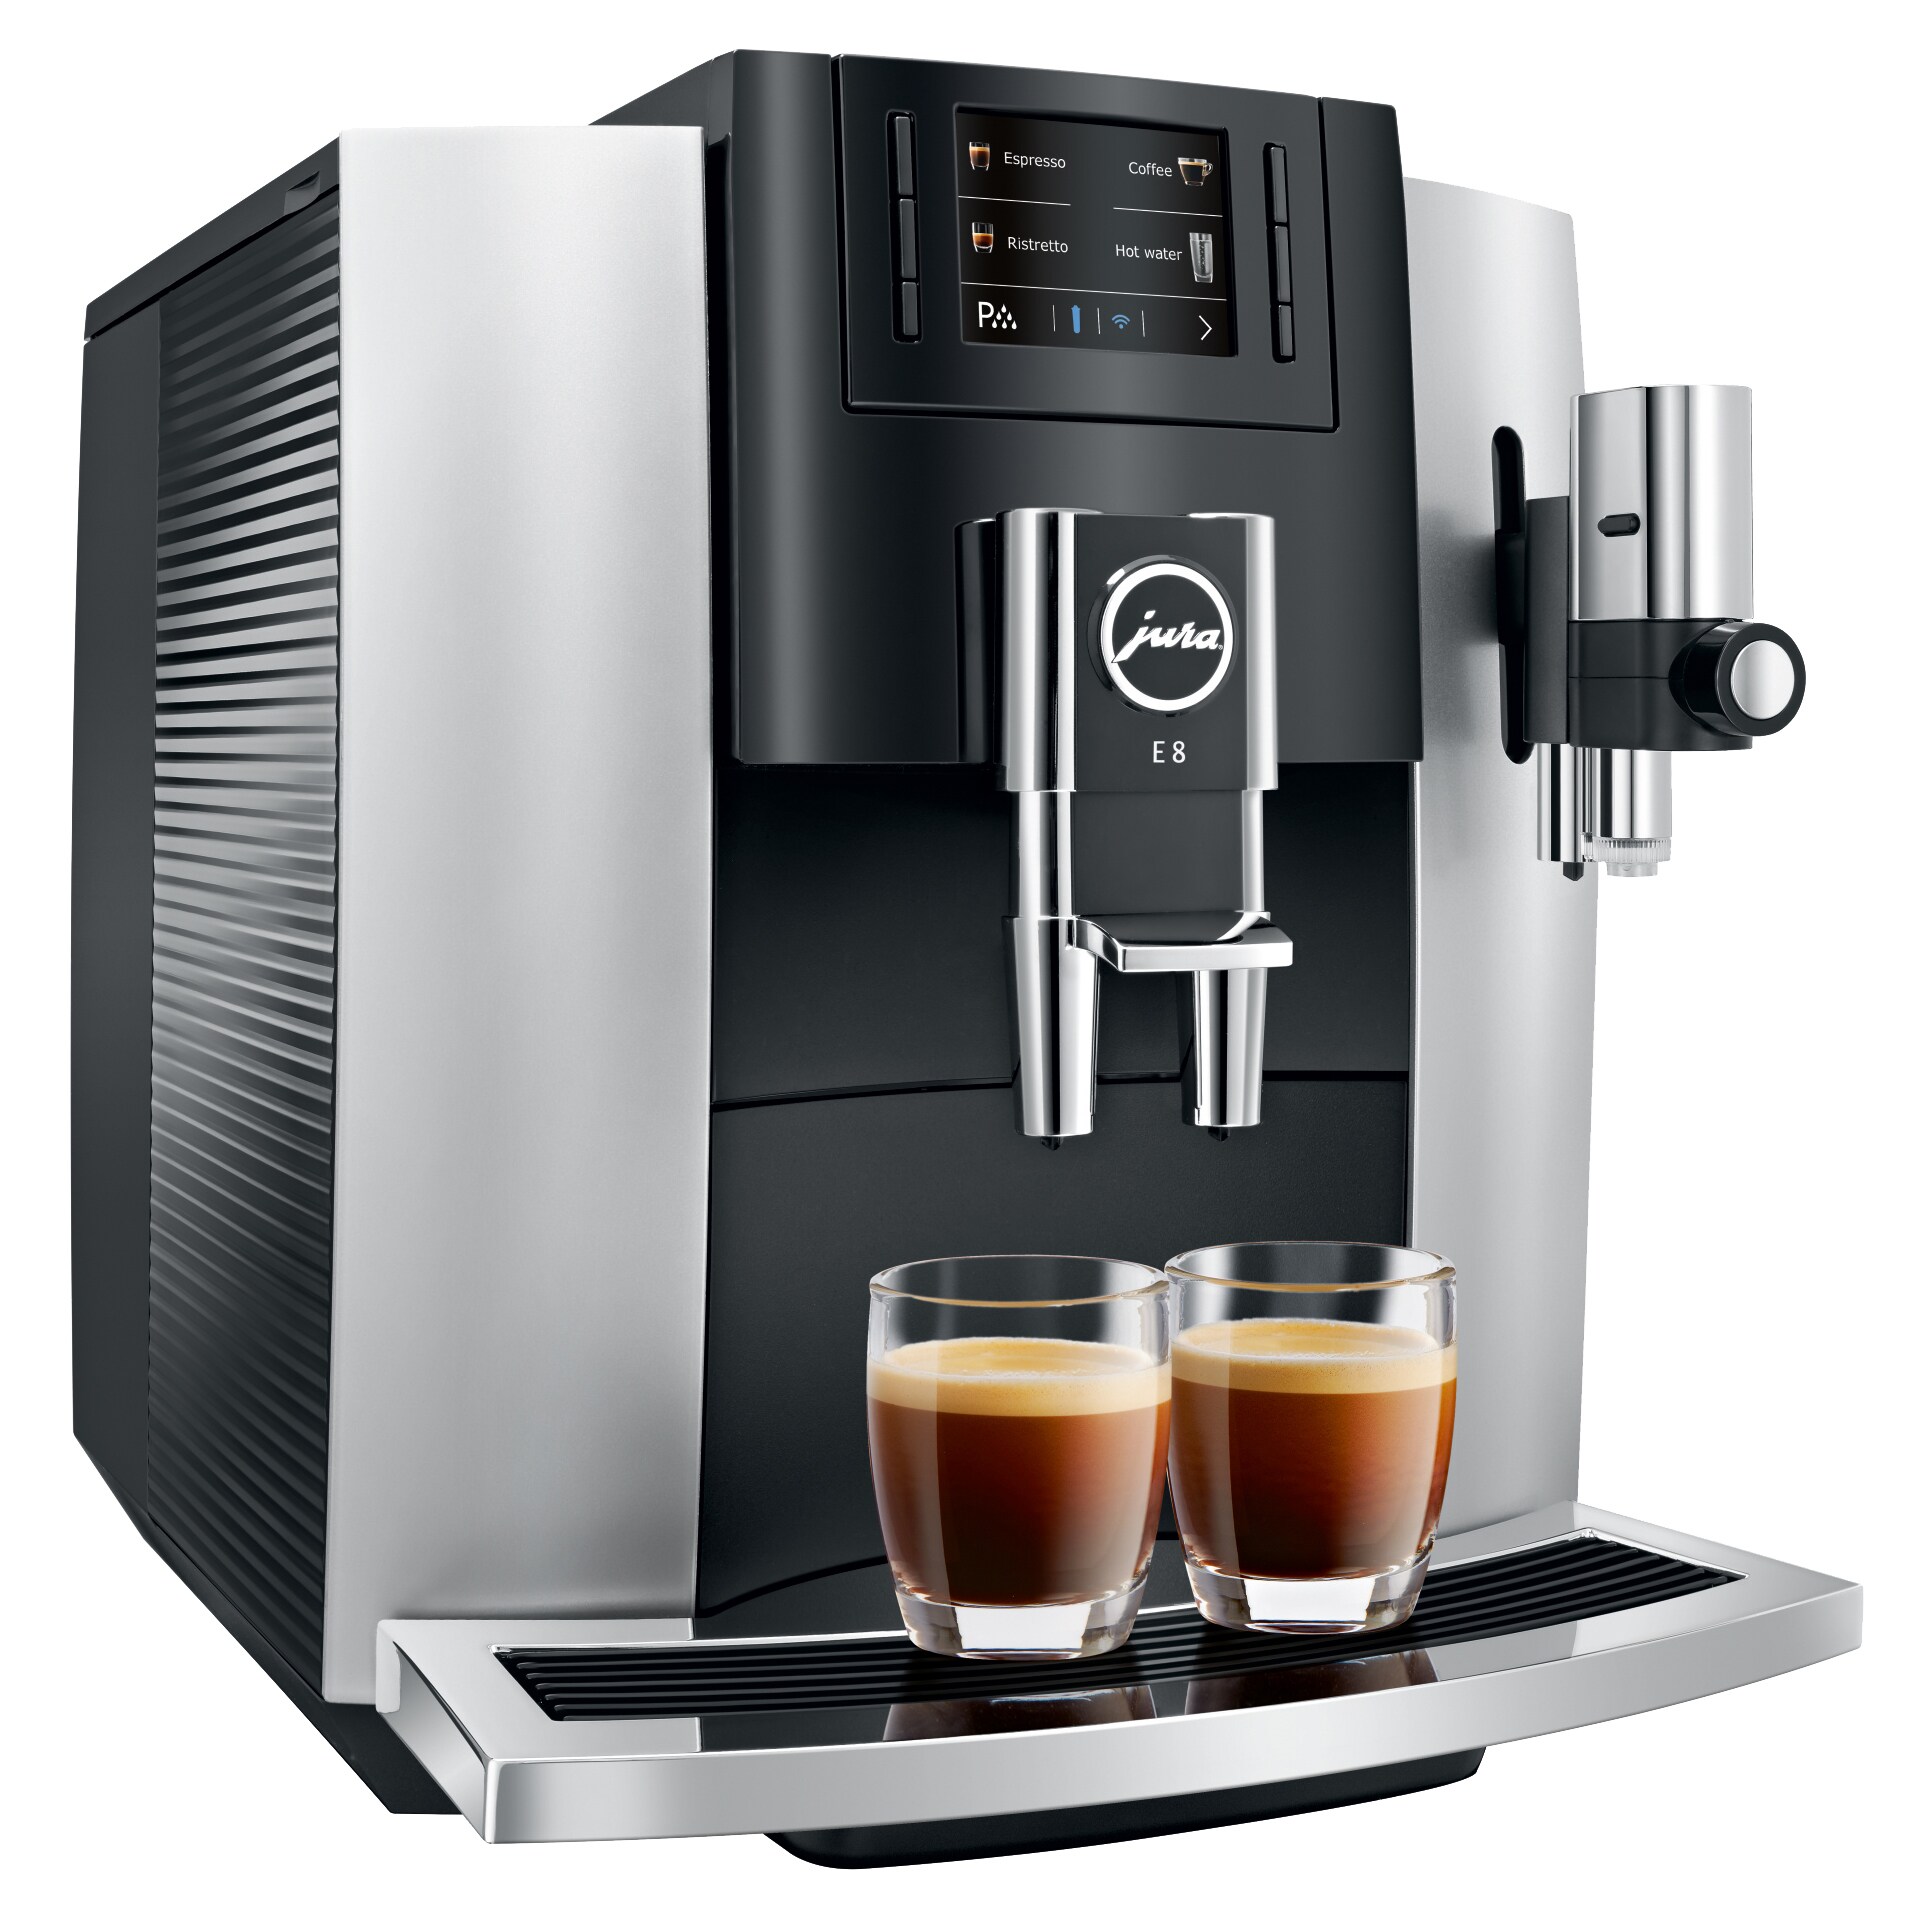 Jura - Kaffemaskiner & kaffetillbehör av högsta kvalitet - Elgiganten